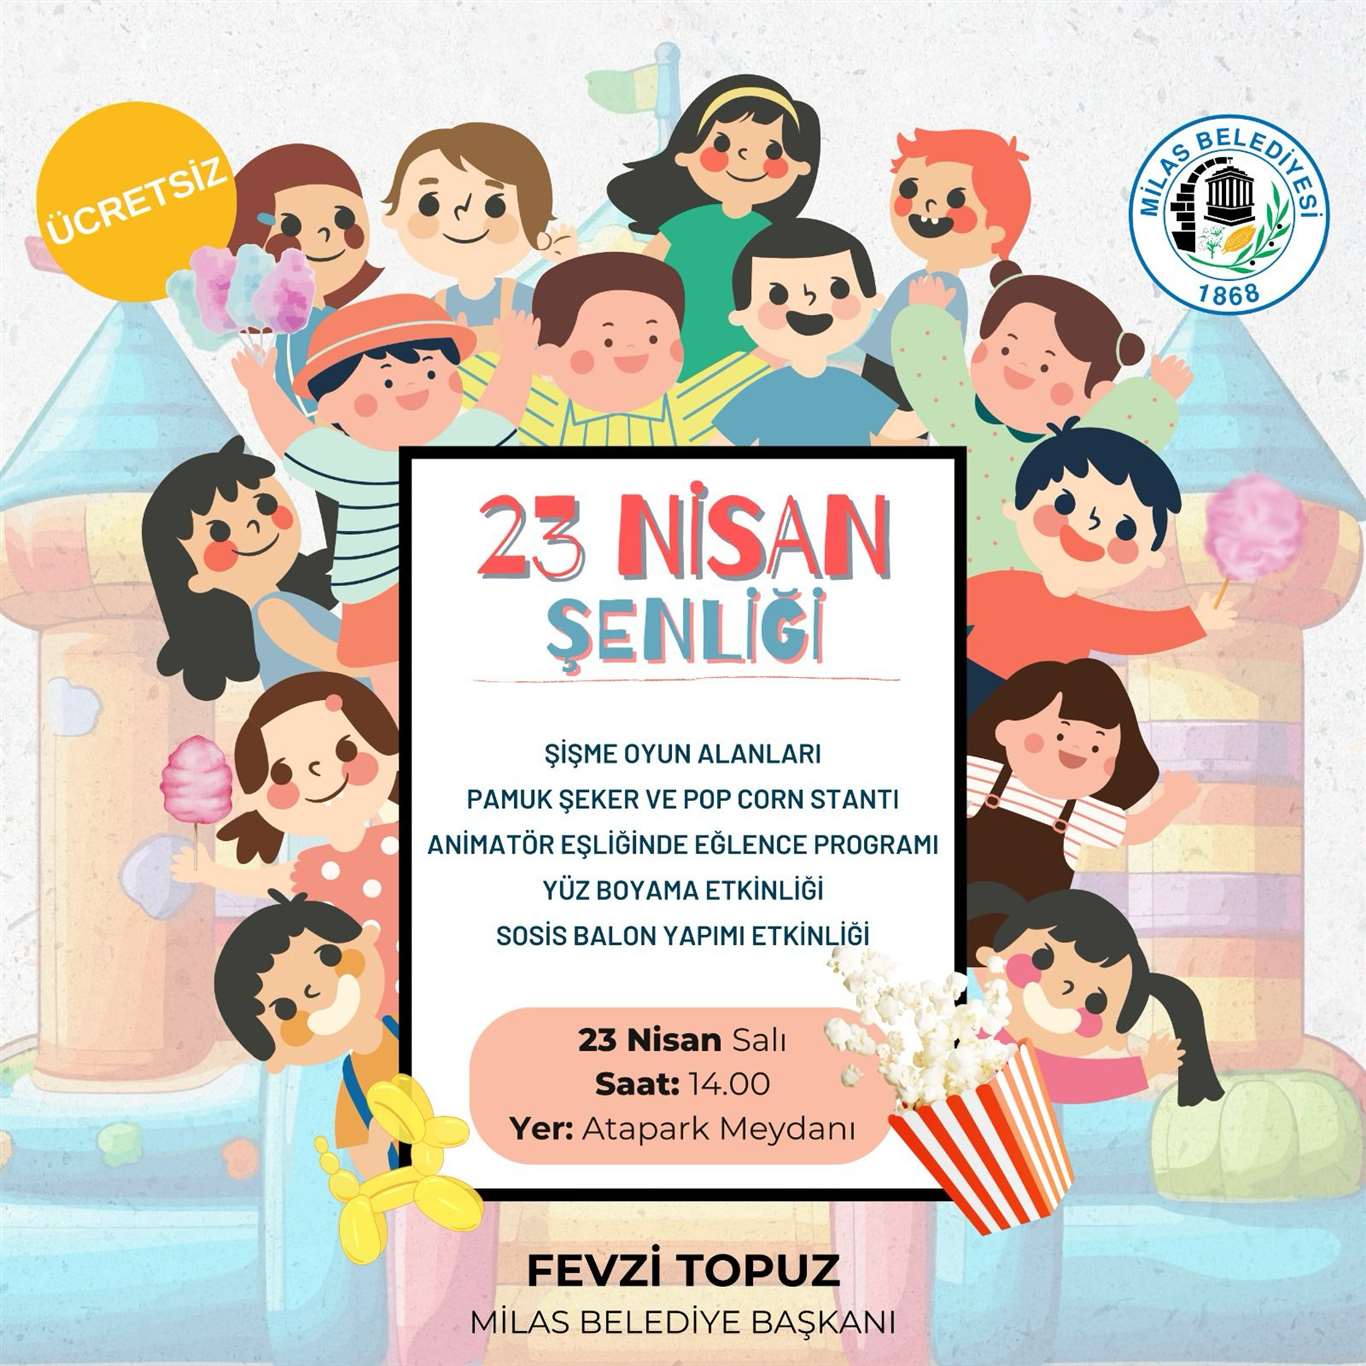 Milas'ta 23 Şenliği ile çocuklara unutulmaz bir gün yaşatılacak haberi